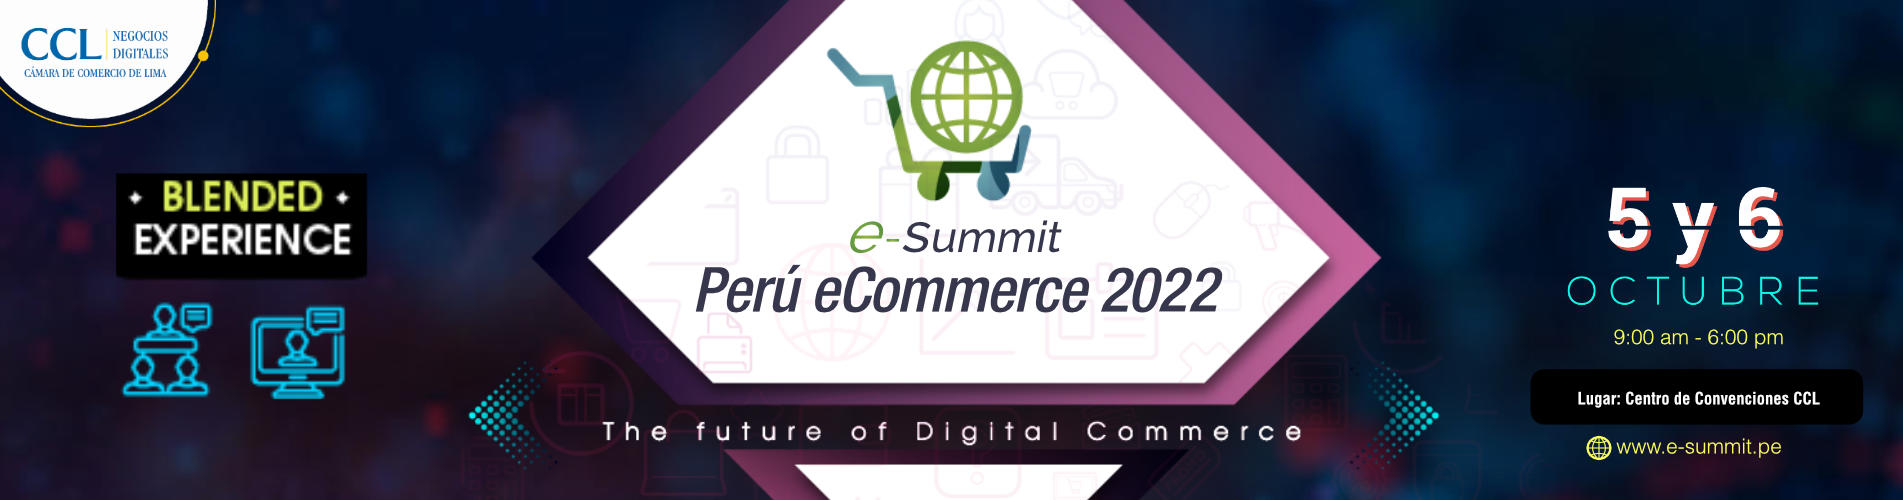 e-Summit_PERU-ECOMMERCE-2022